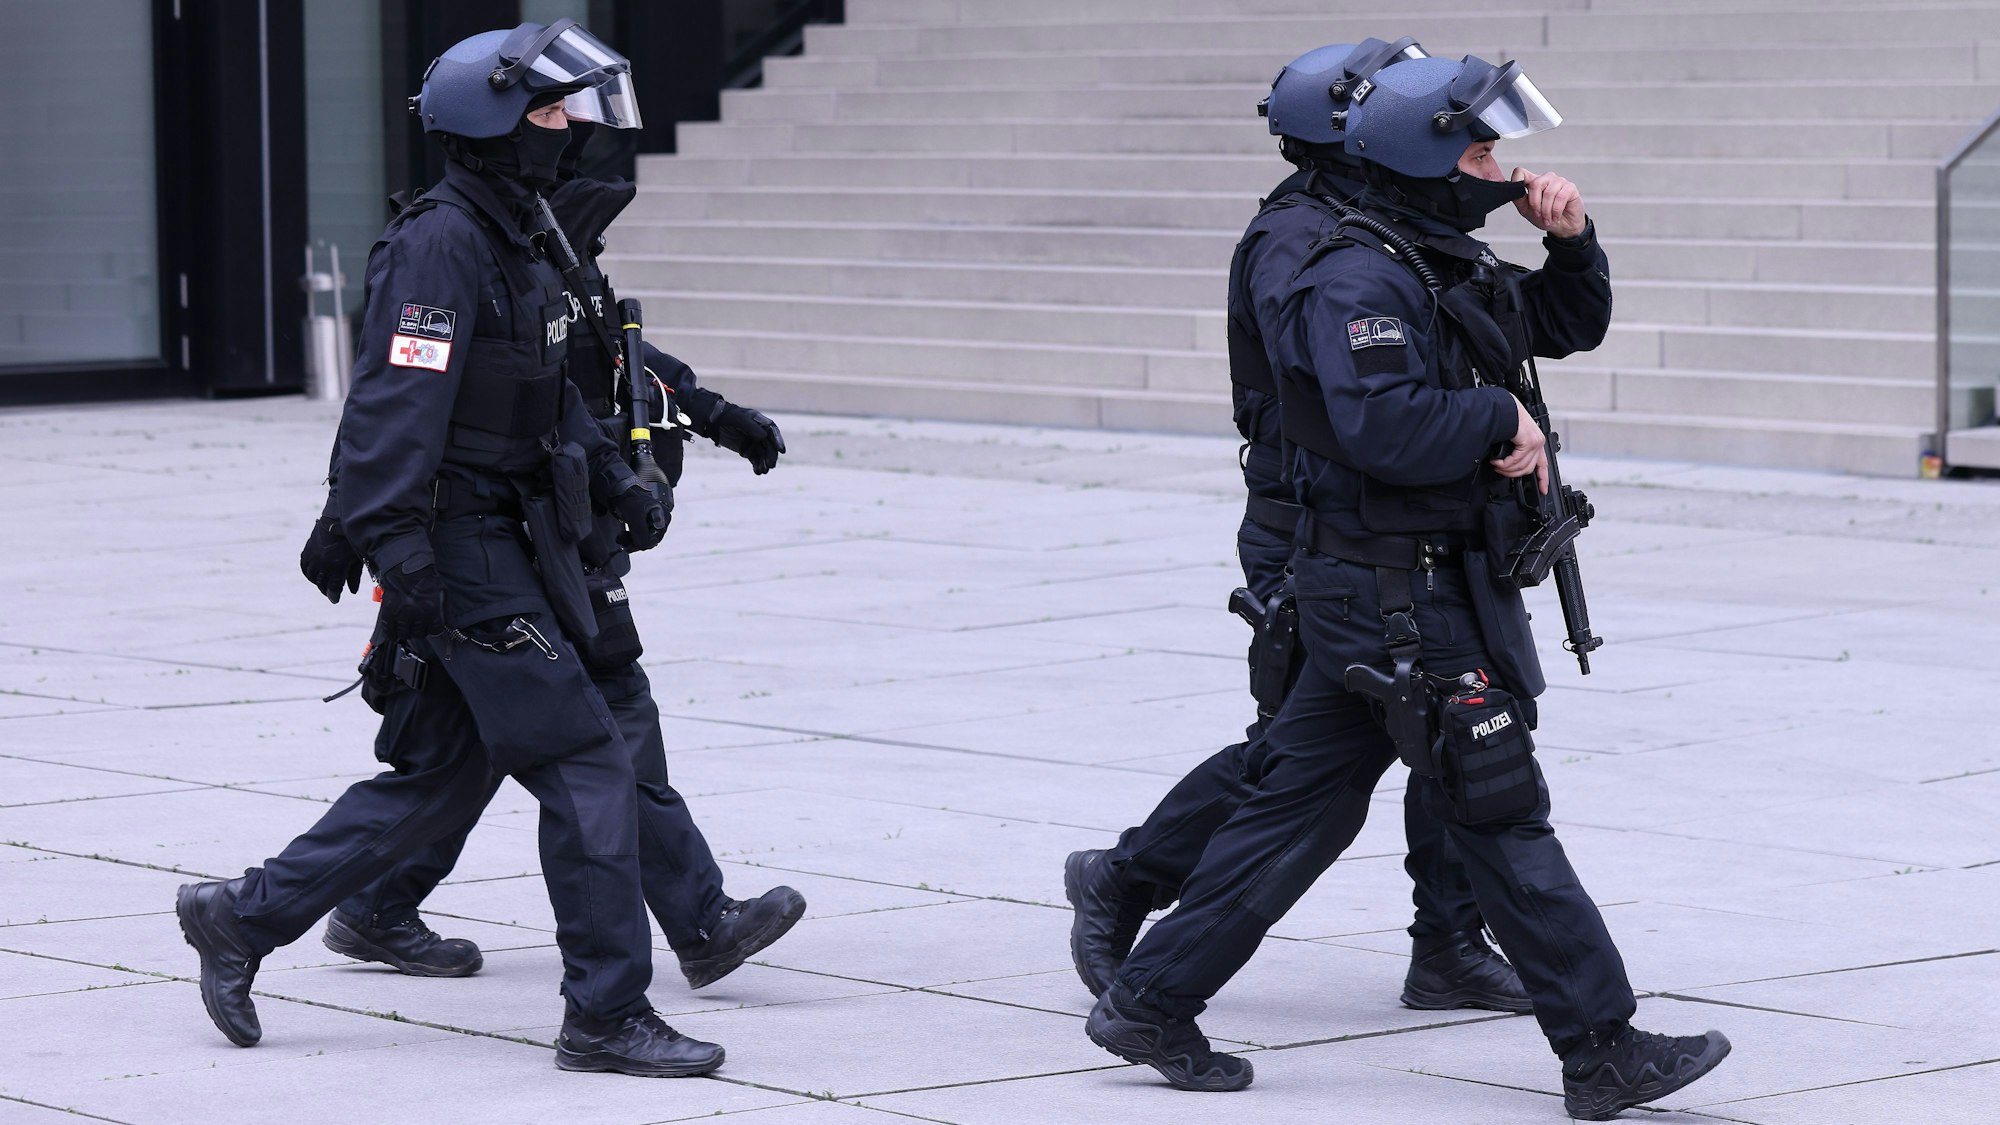 Vier Einsatzkräfte der Polizei tragen Helme und sind mit Maschinenpistolen bewaffnet.